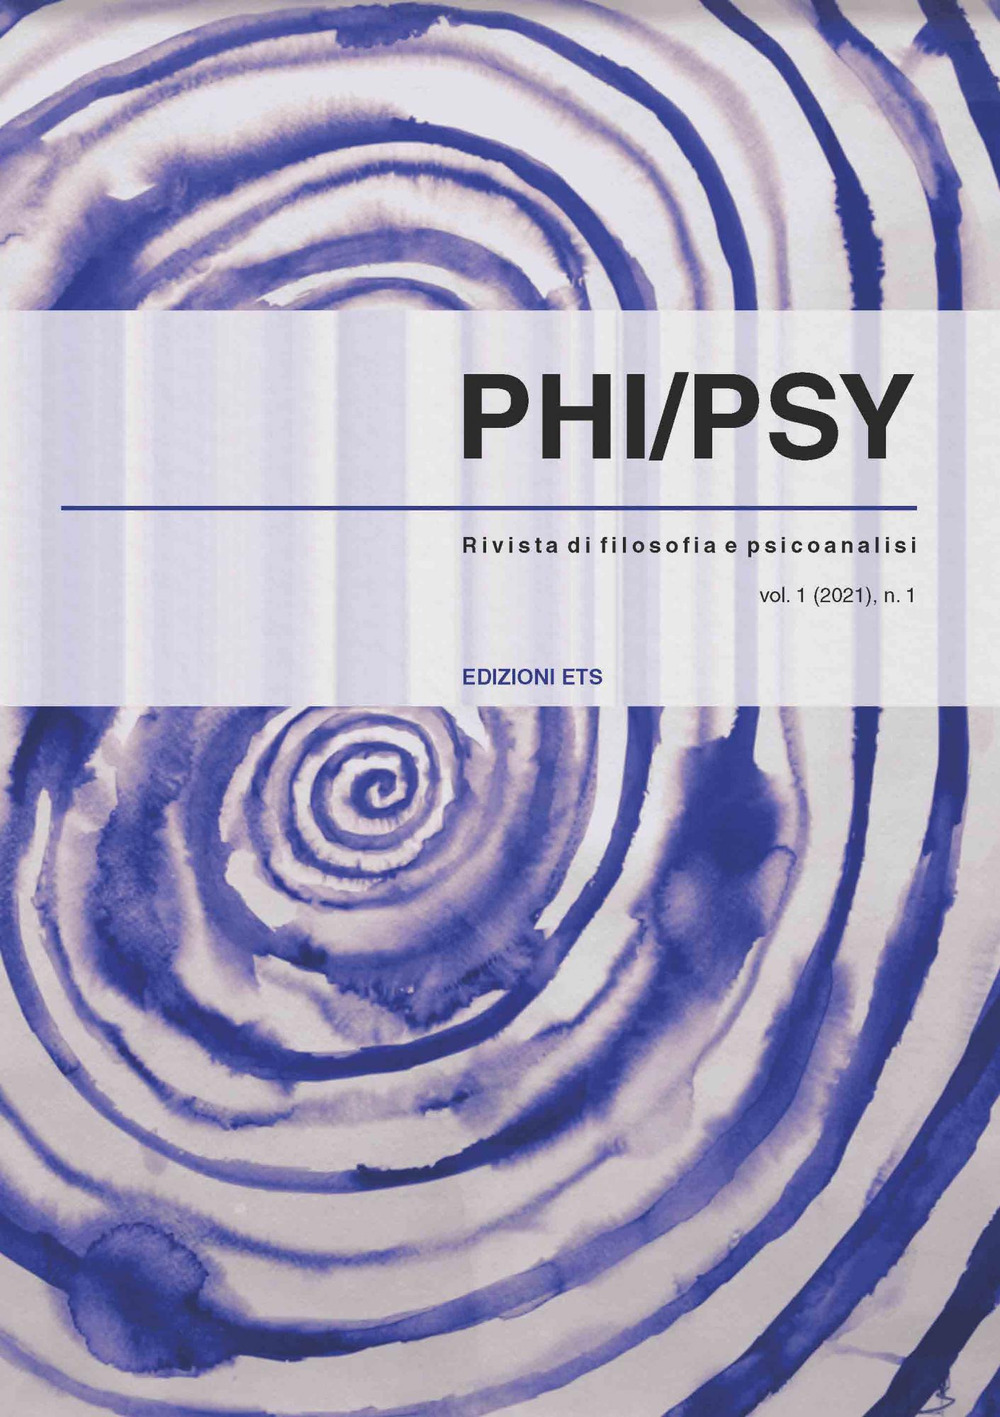 Phi-psy. Rivista di filosofia e psicoanalisi (2021). Vol. 1